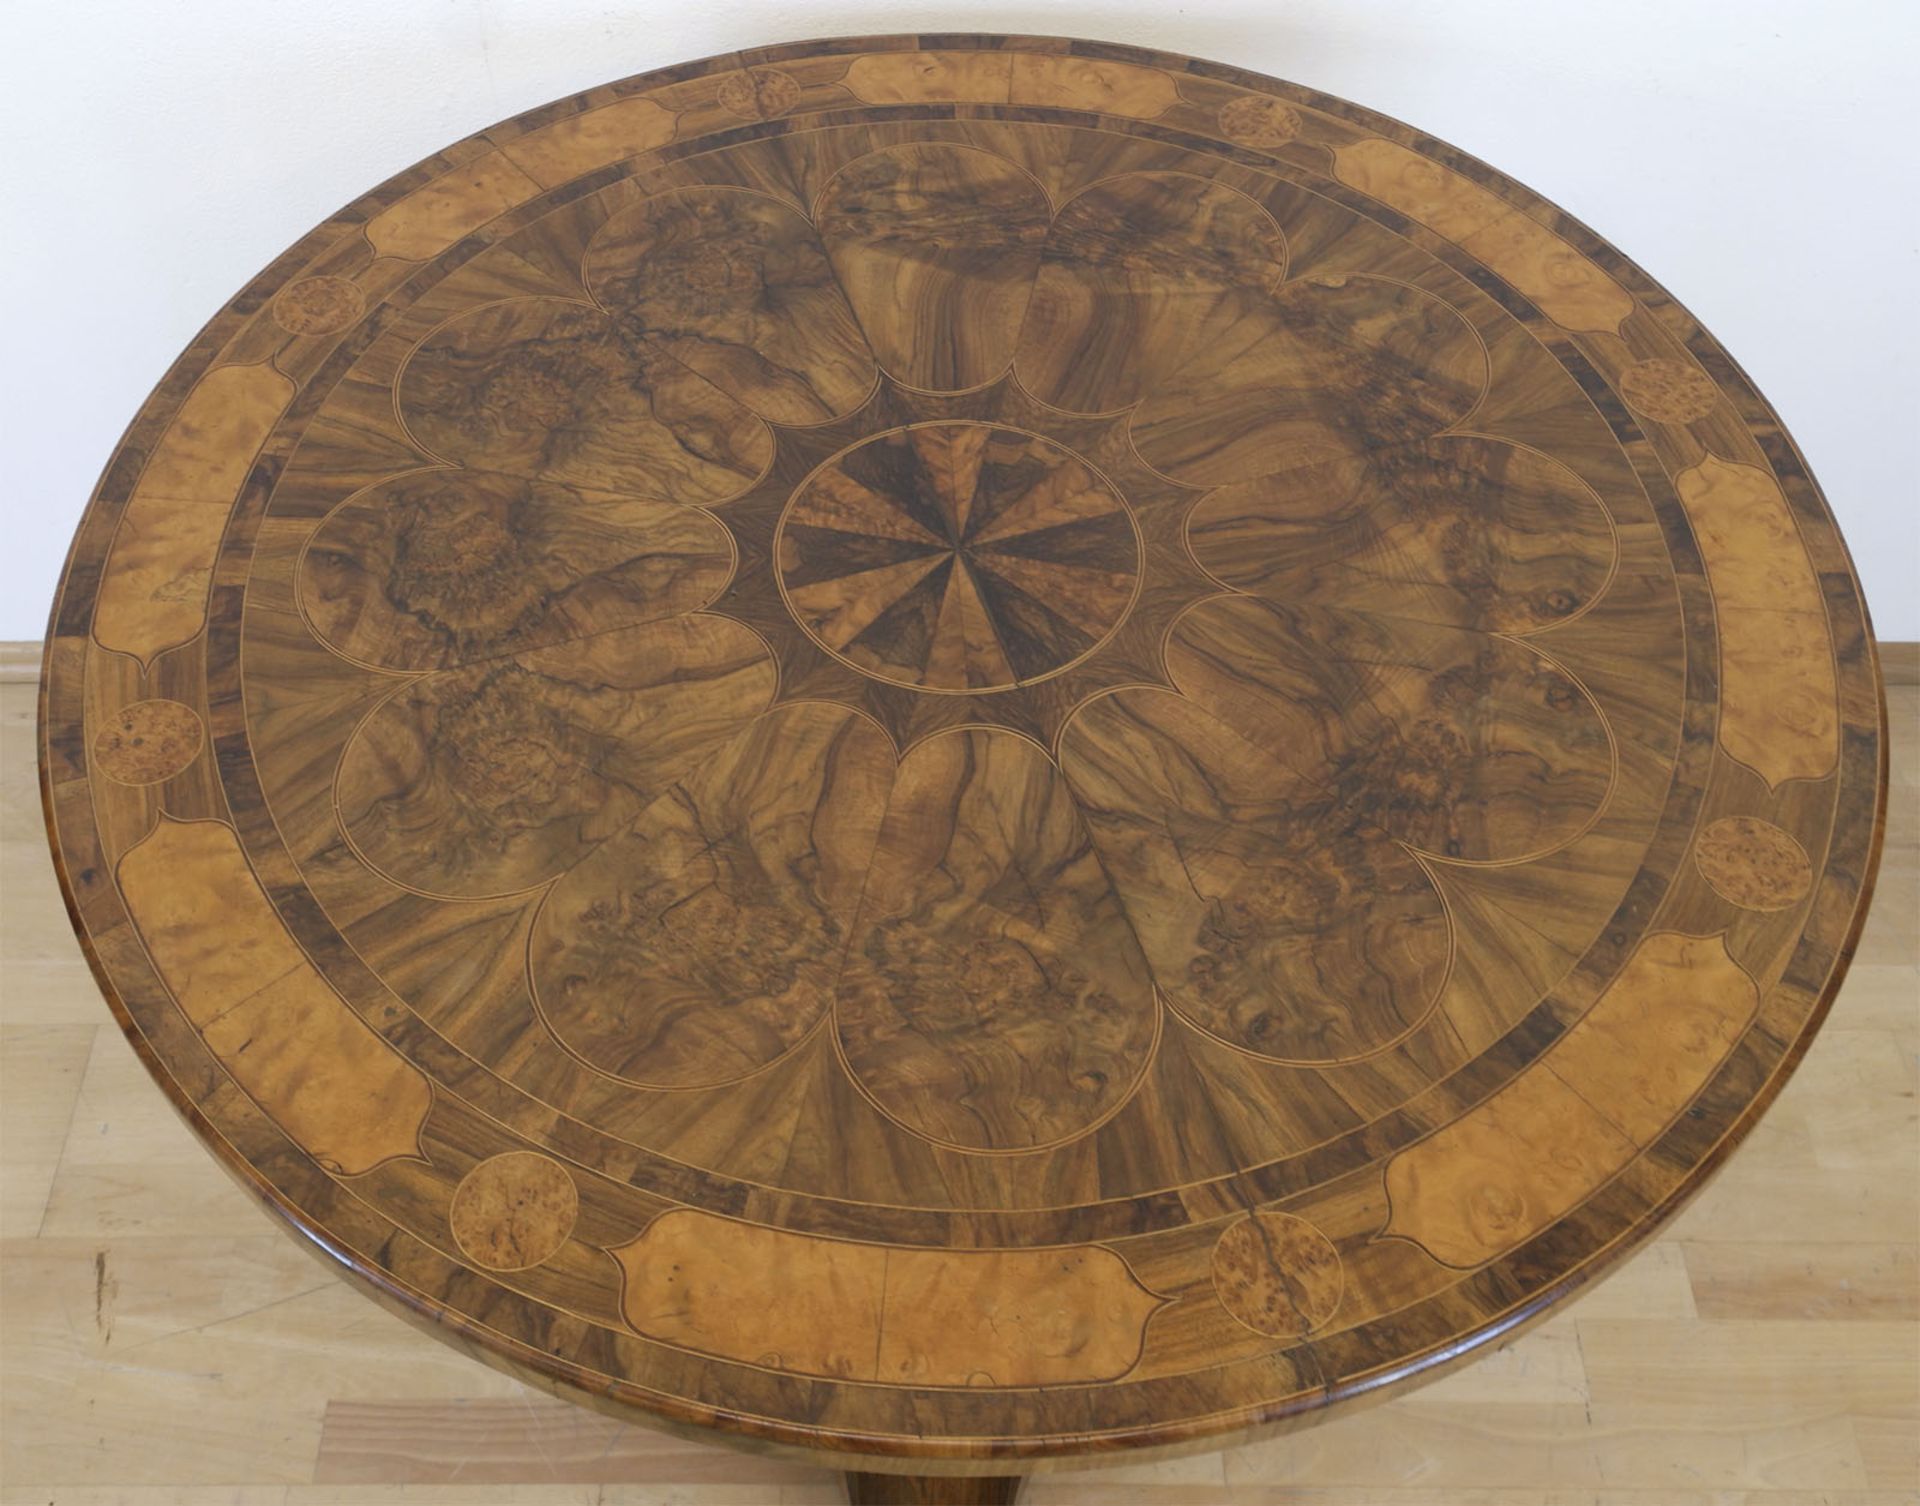 Biedermeier-Tisch, Nußbaum/Maserholz furniert, intarsiert, über 3-passigem Fuß Mittelsäule mit rund - Bild 2 aus 2